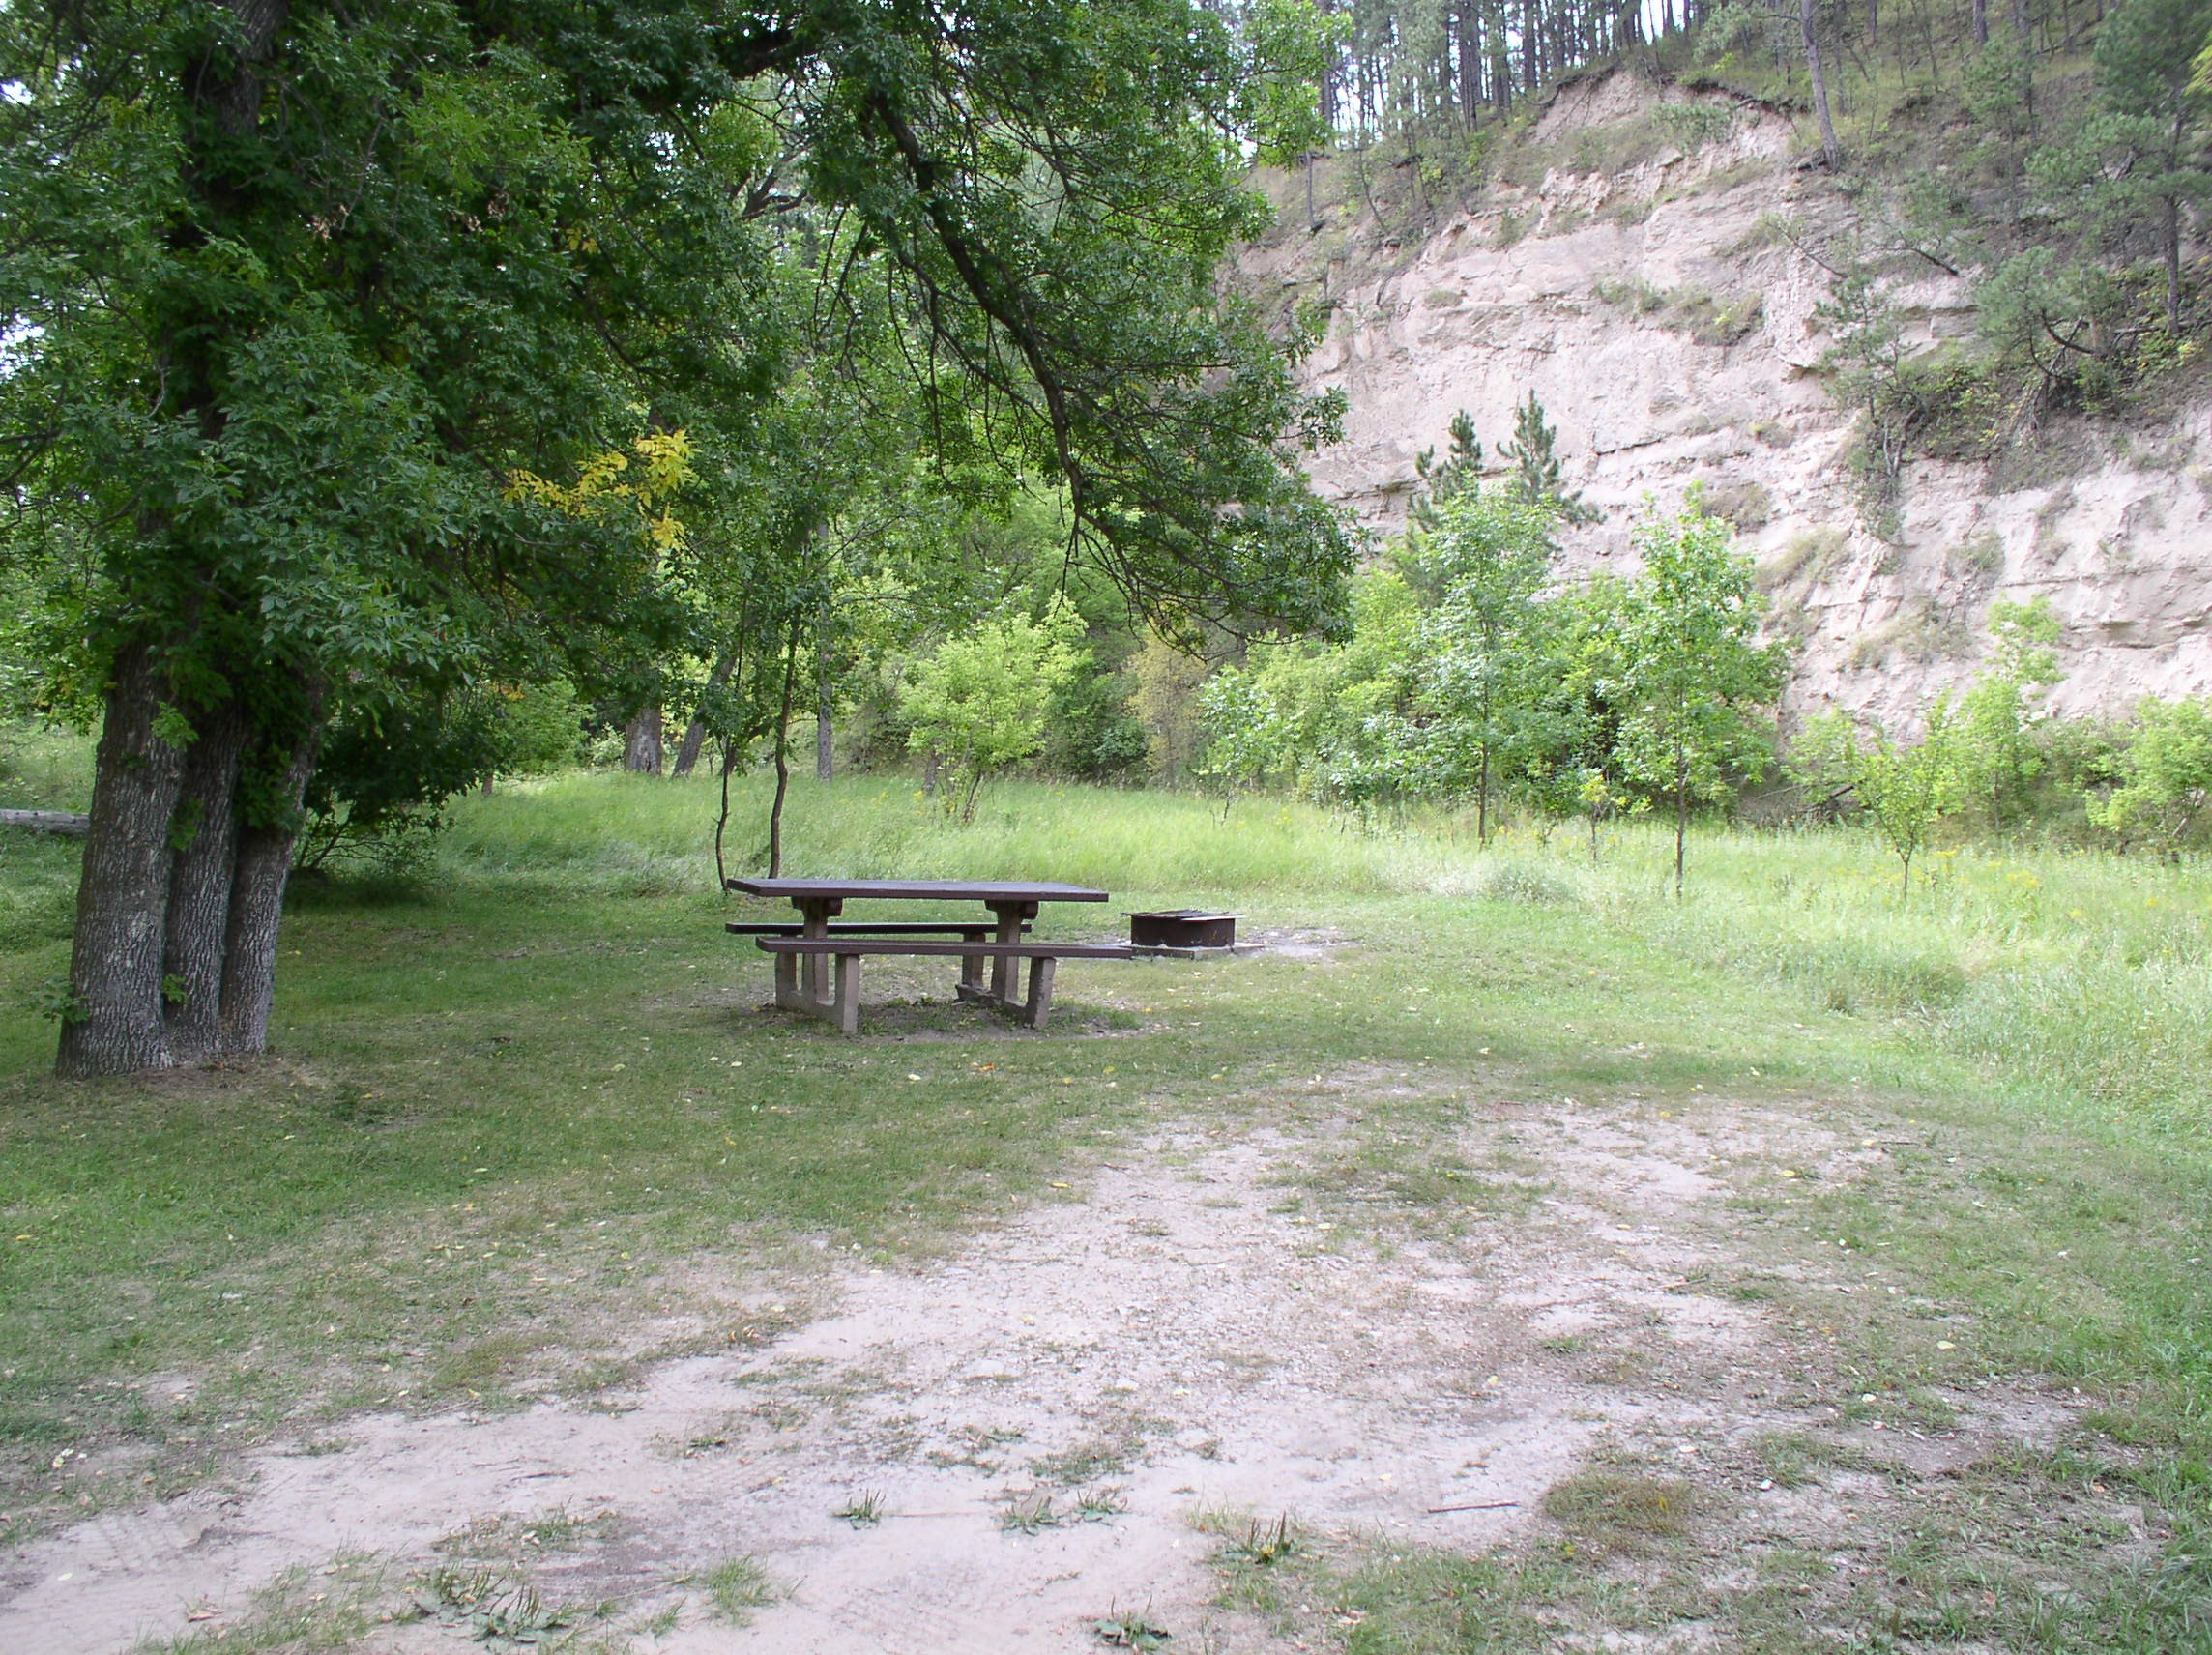 Picnic table in a primitive grassy picnic area